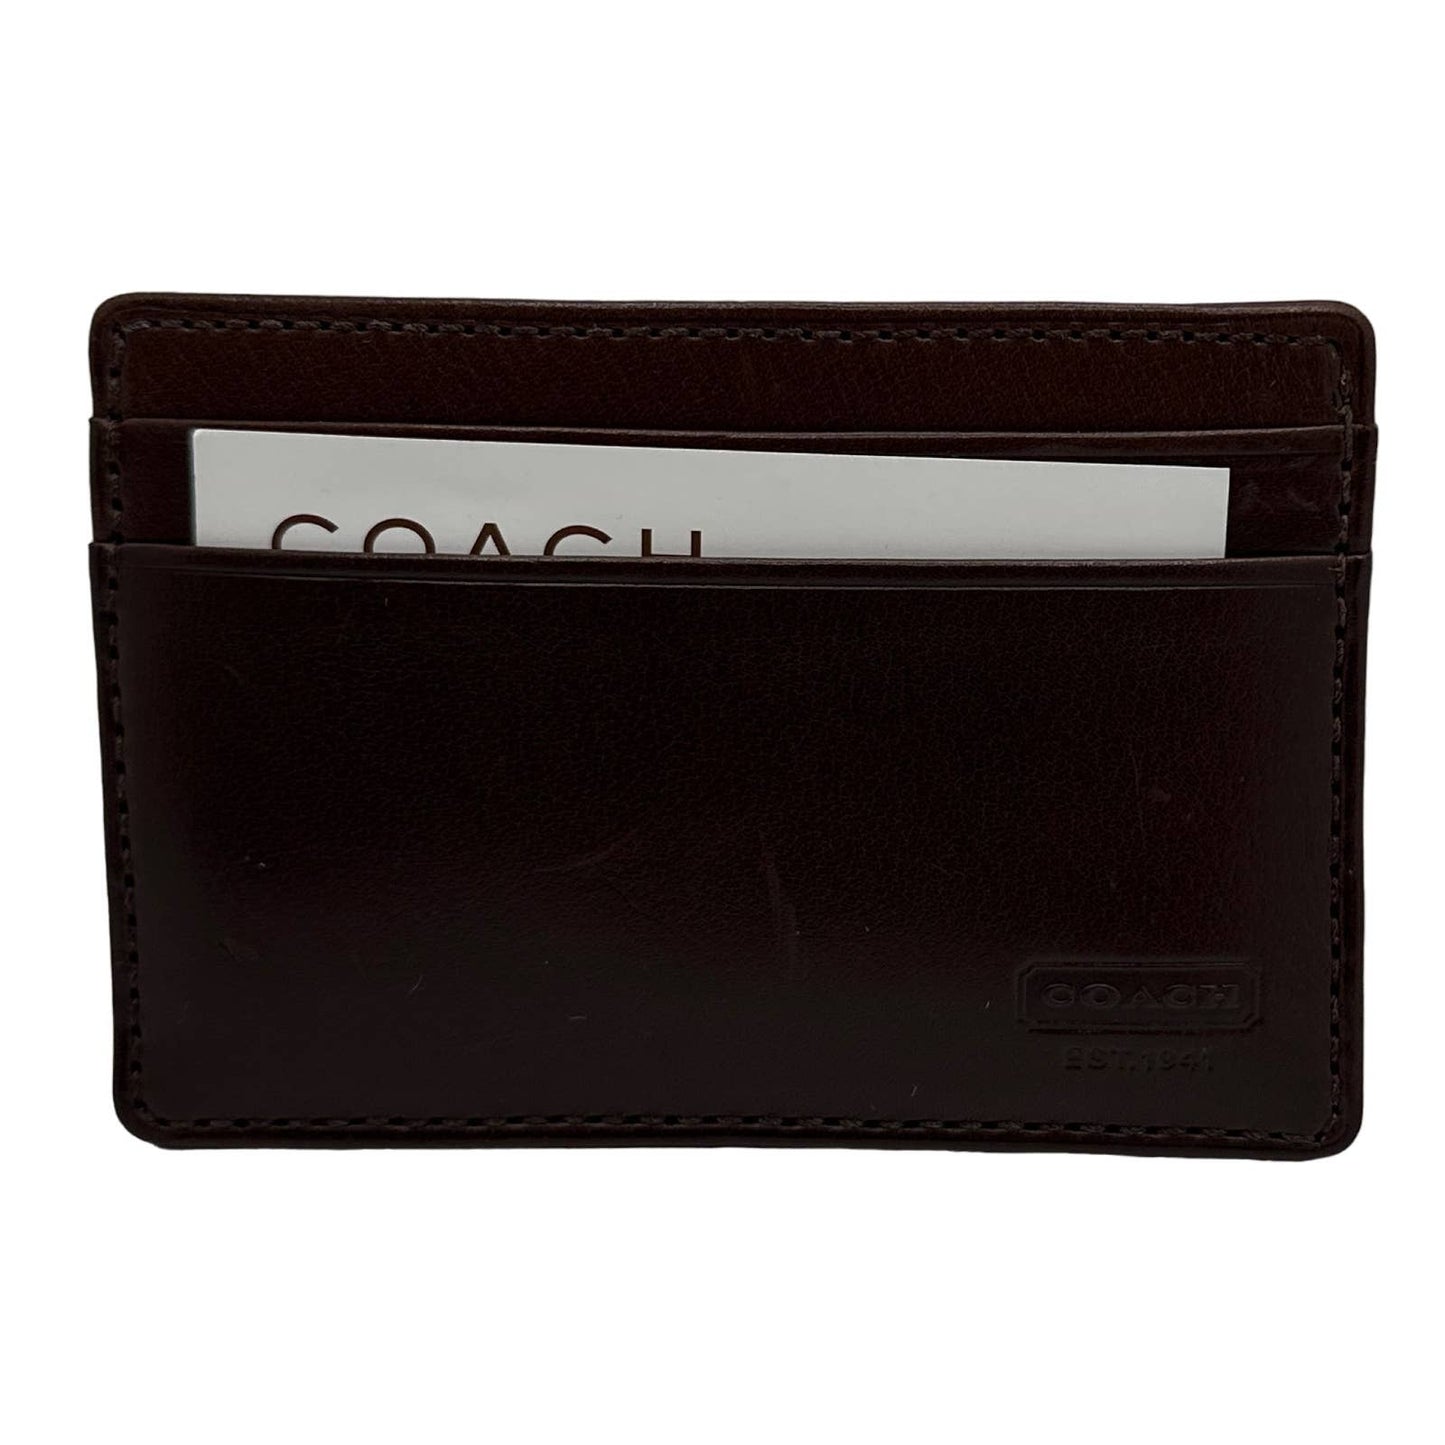 COACH Men / Unisex Money Clip Wallet